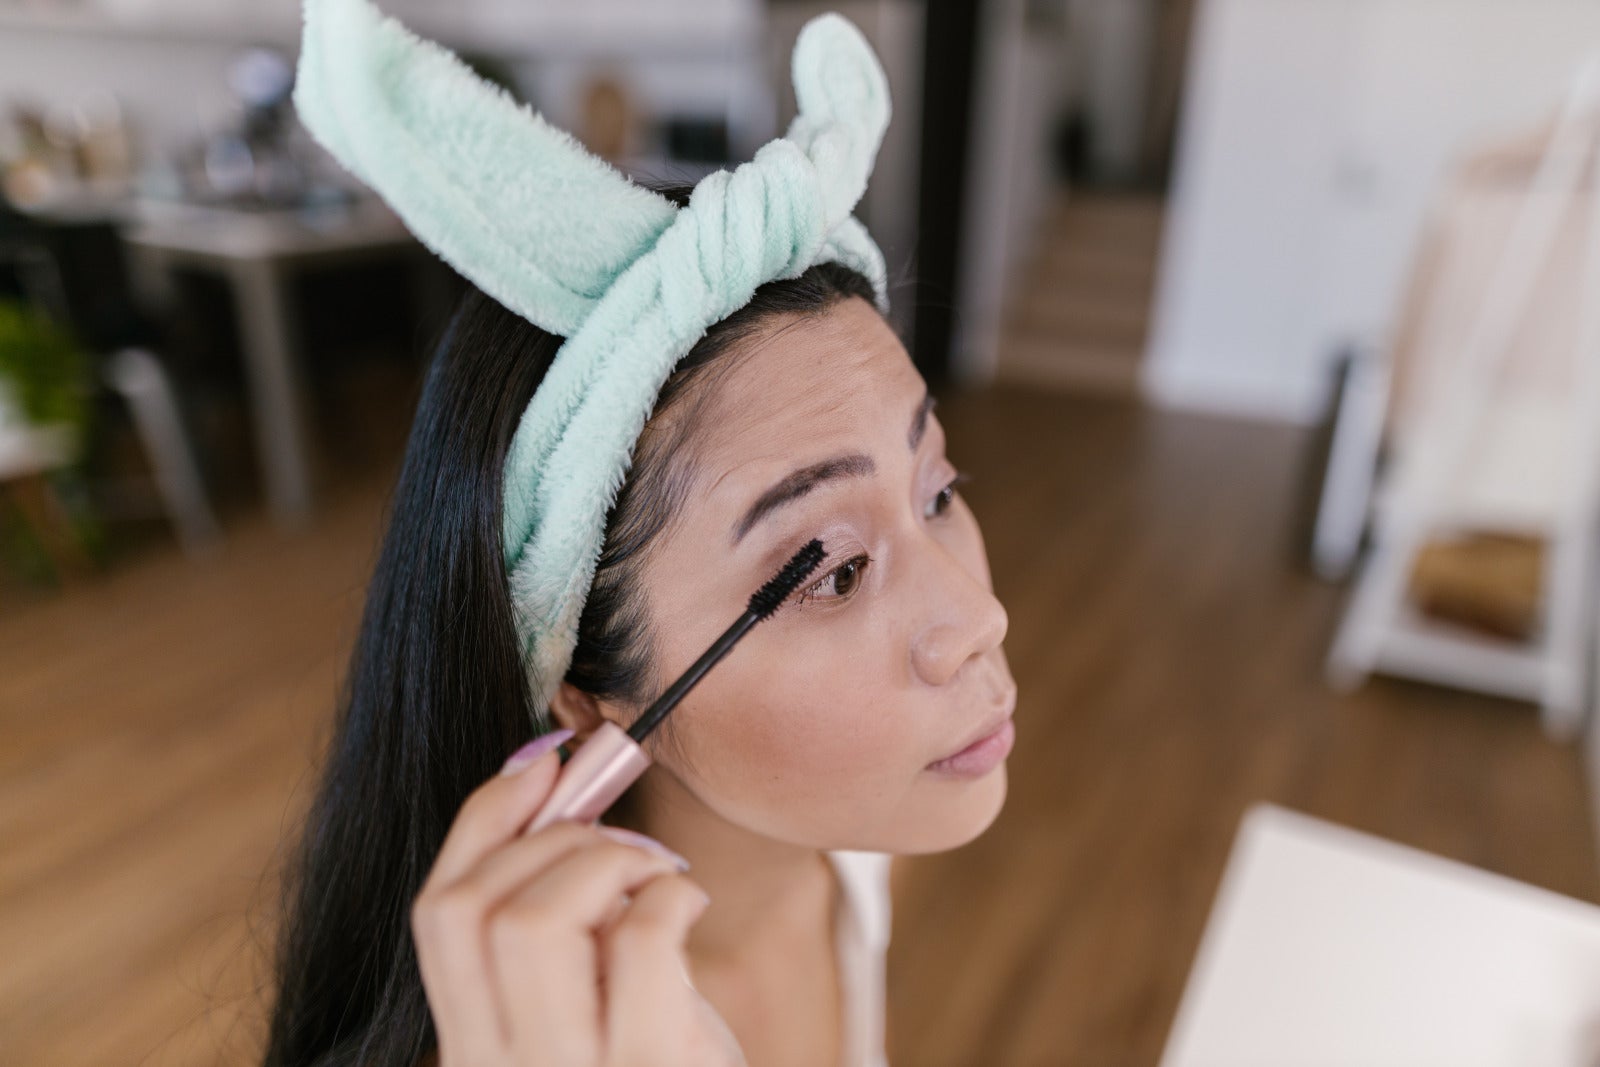 asian girl putting makeup